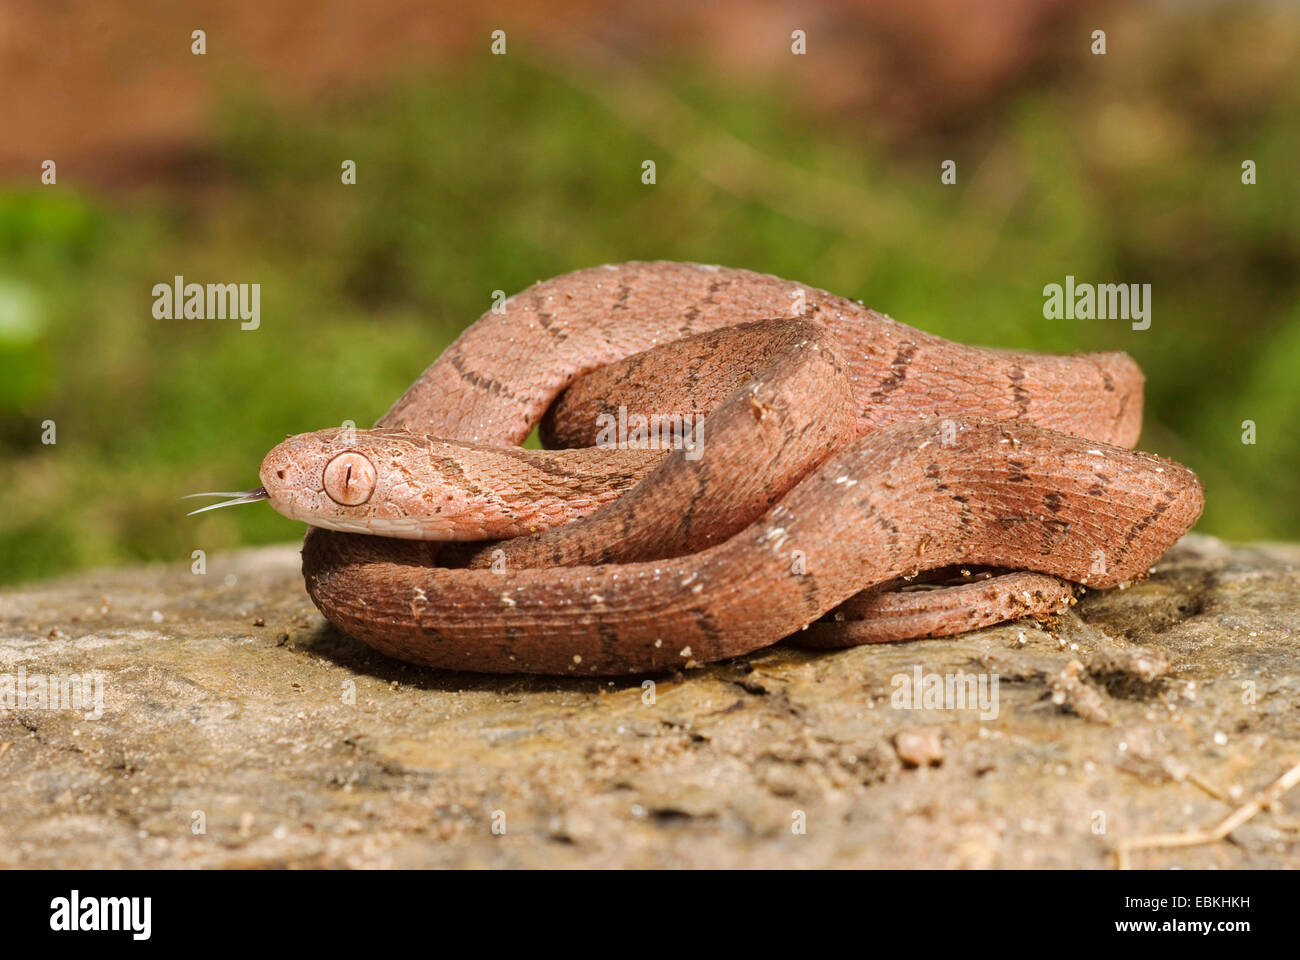 egg-eating snake, African egg-eating snake (Dasypeltis scabra), rolled-up Stock Photo